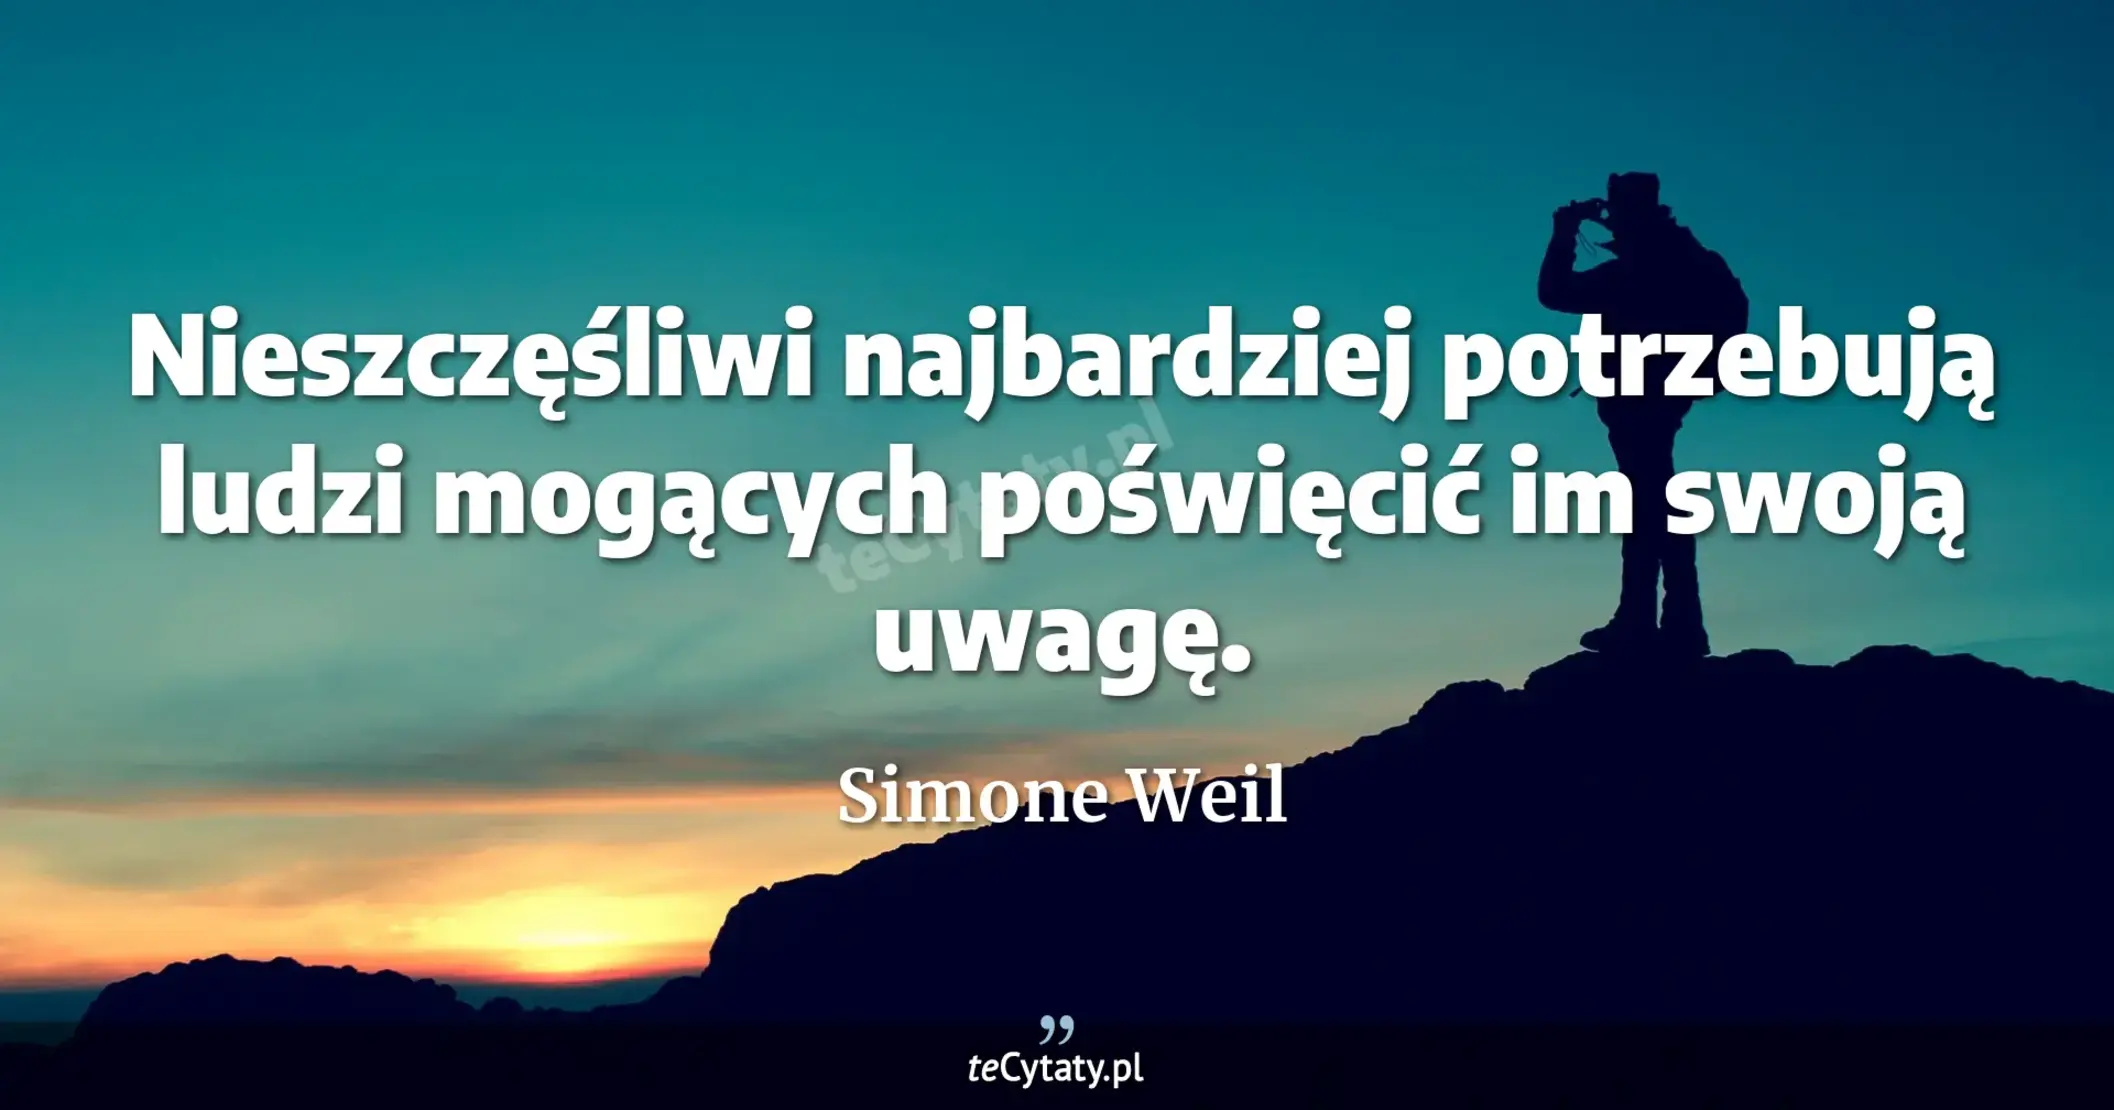 Nieszczęśliwi najbardziej potrzebują ludzi mogących poświęcić im swoją uwagę. - Simone Weil